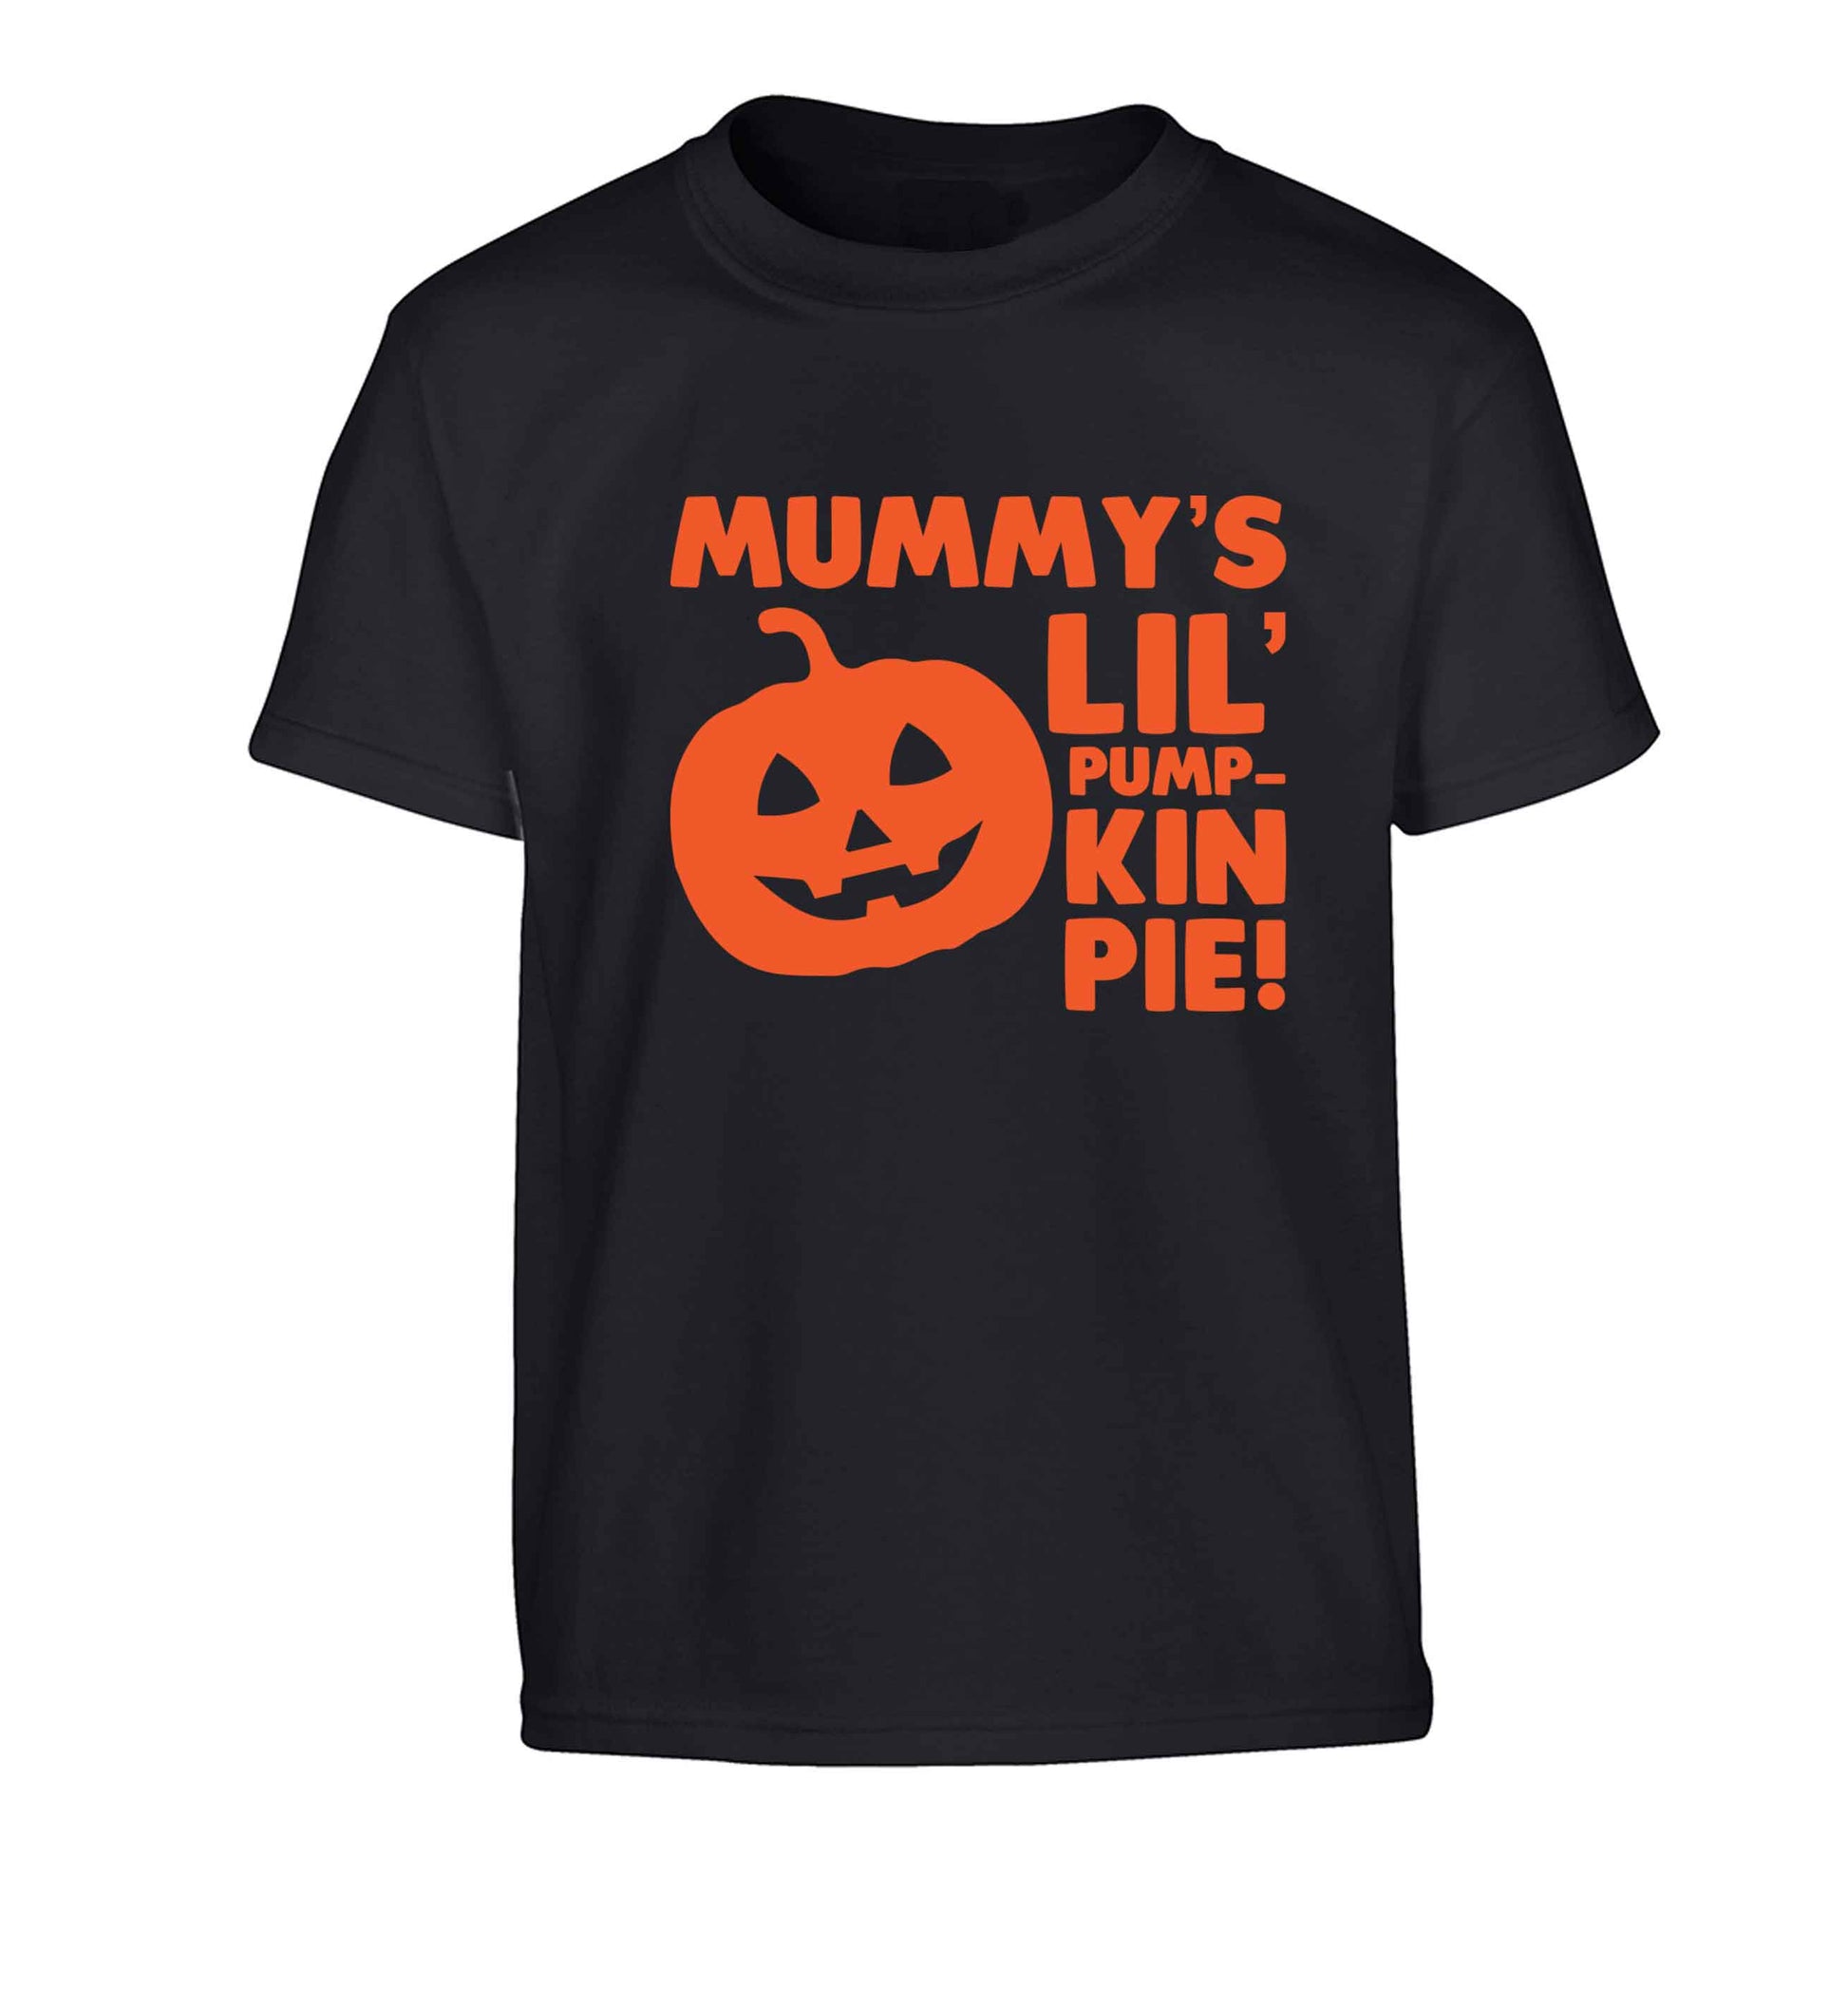 Mummy's lil' pumpkin pie Children's black Tshirt 12-13 Years